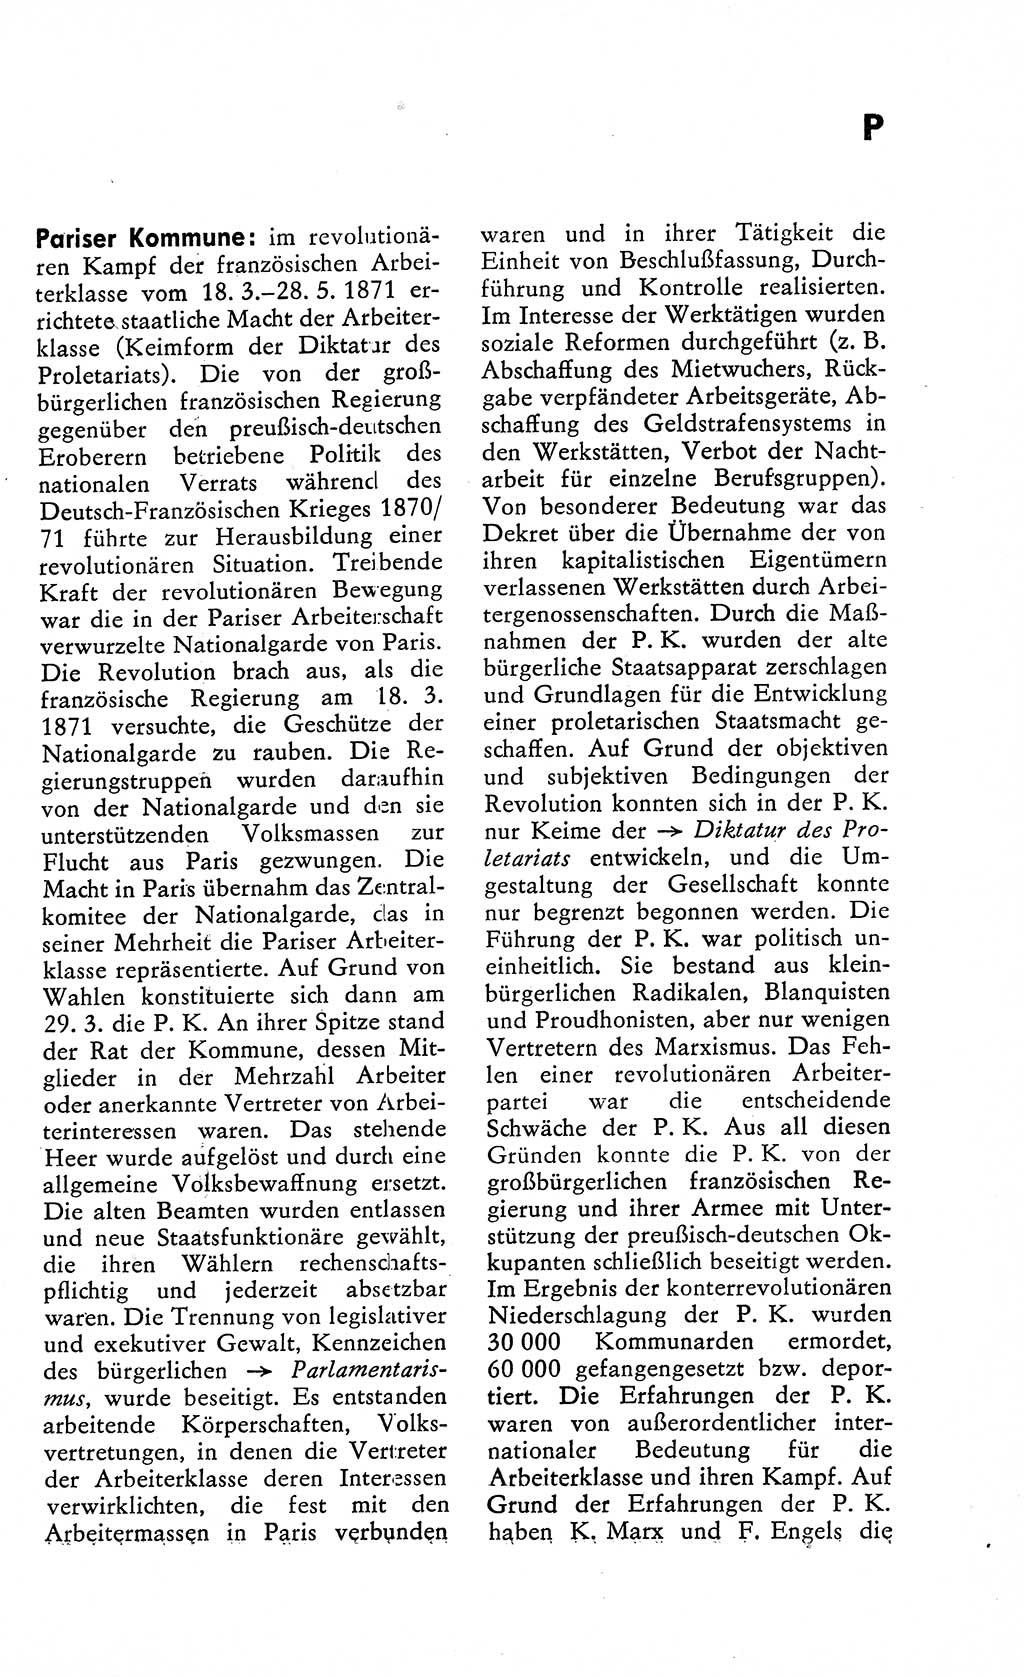 Wörterbuch zum sozialistischen Staat [Deutsche Demokratische Republik (DDR)] 1974, Seite 215 (Wb. soz. St. DDR 1974, S. 215)